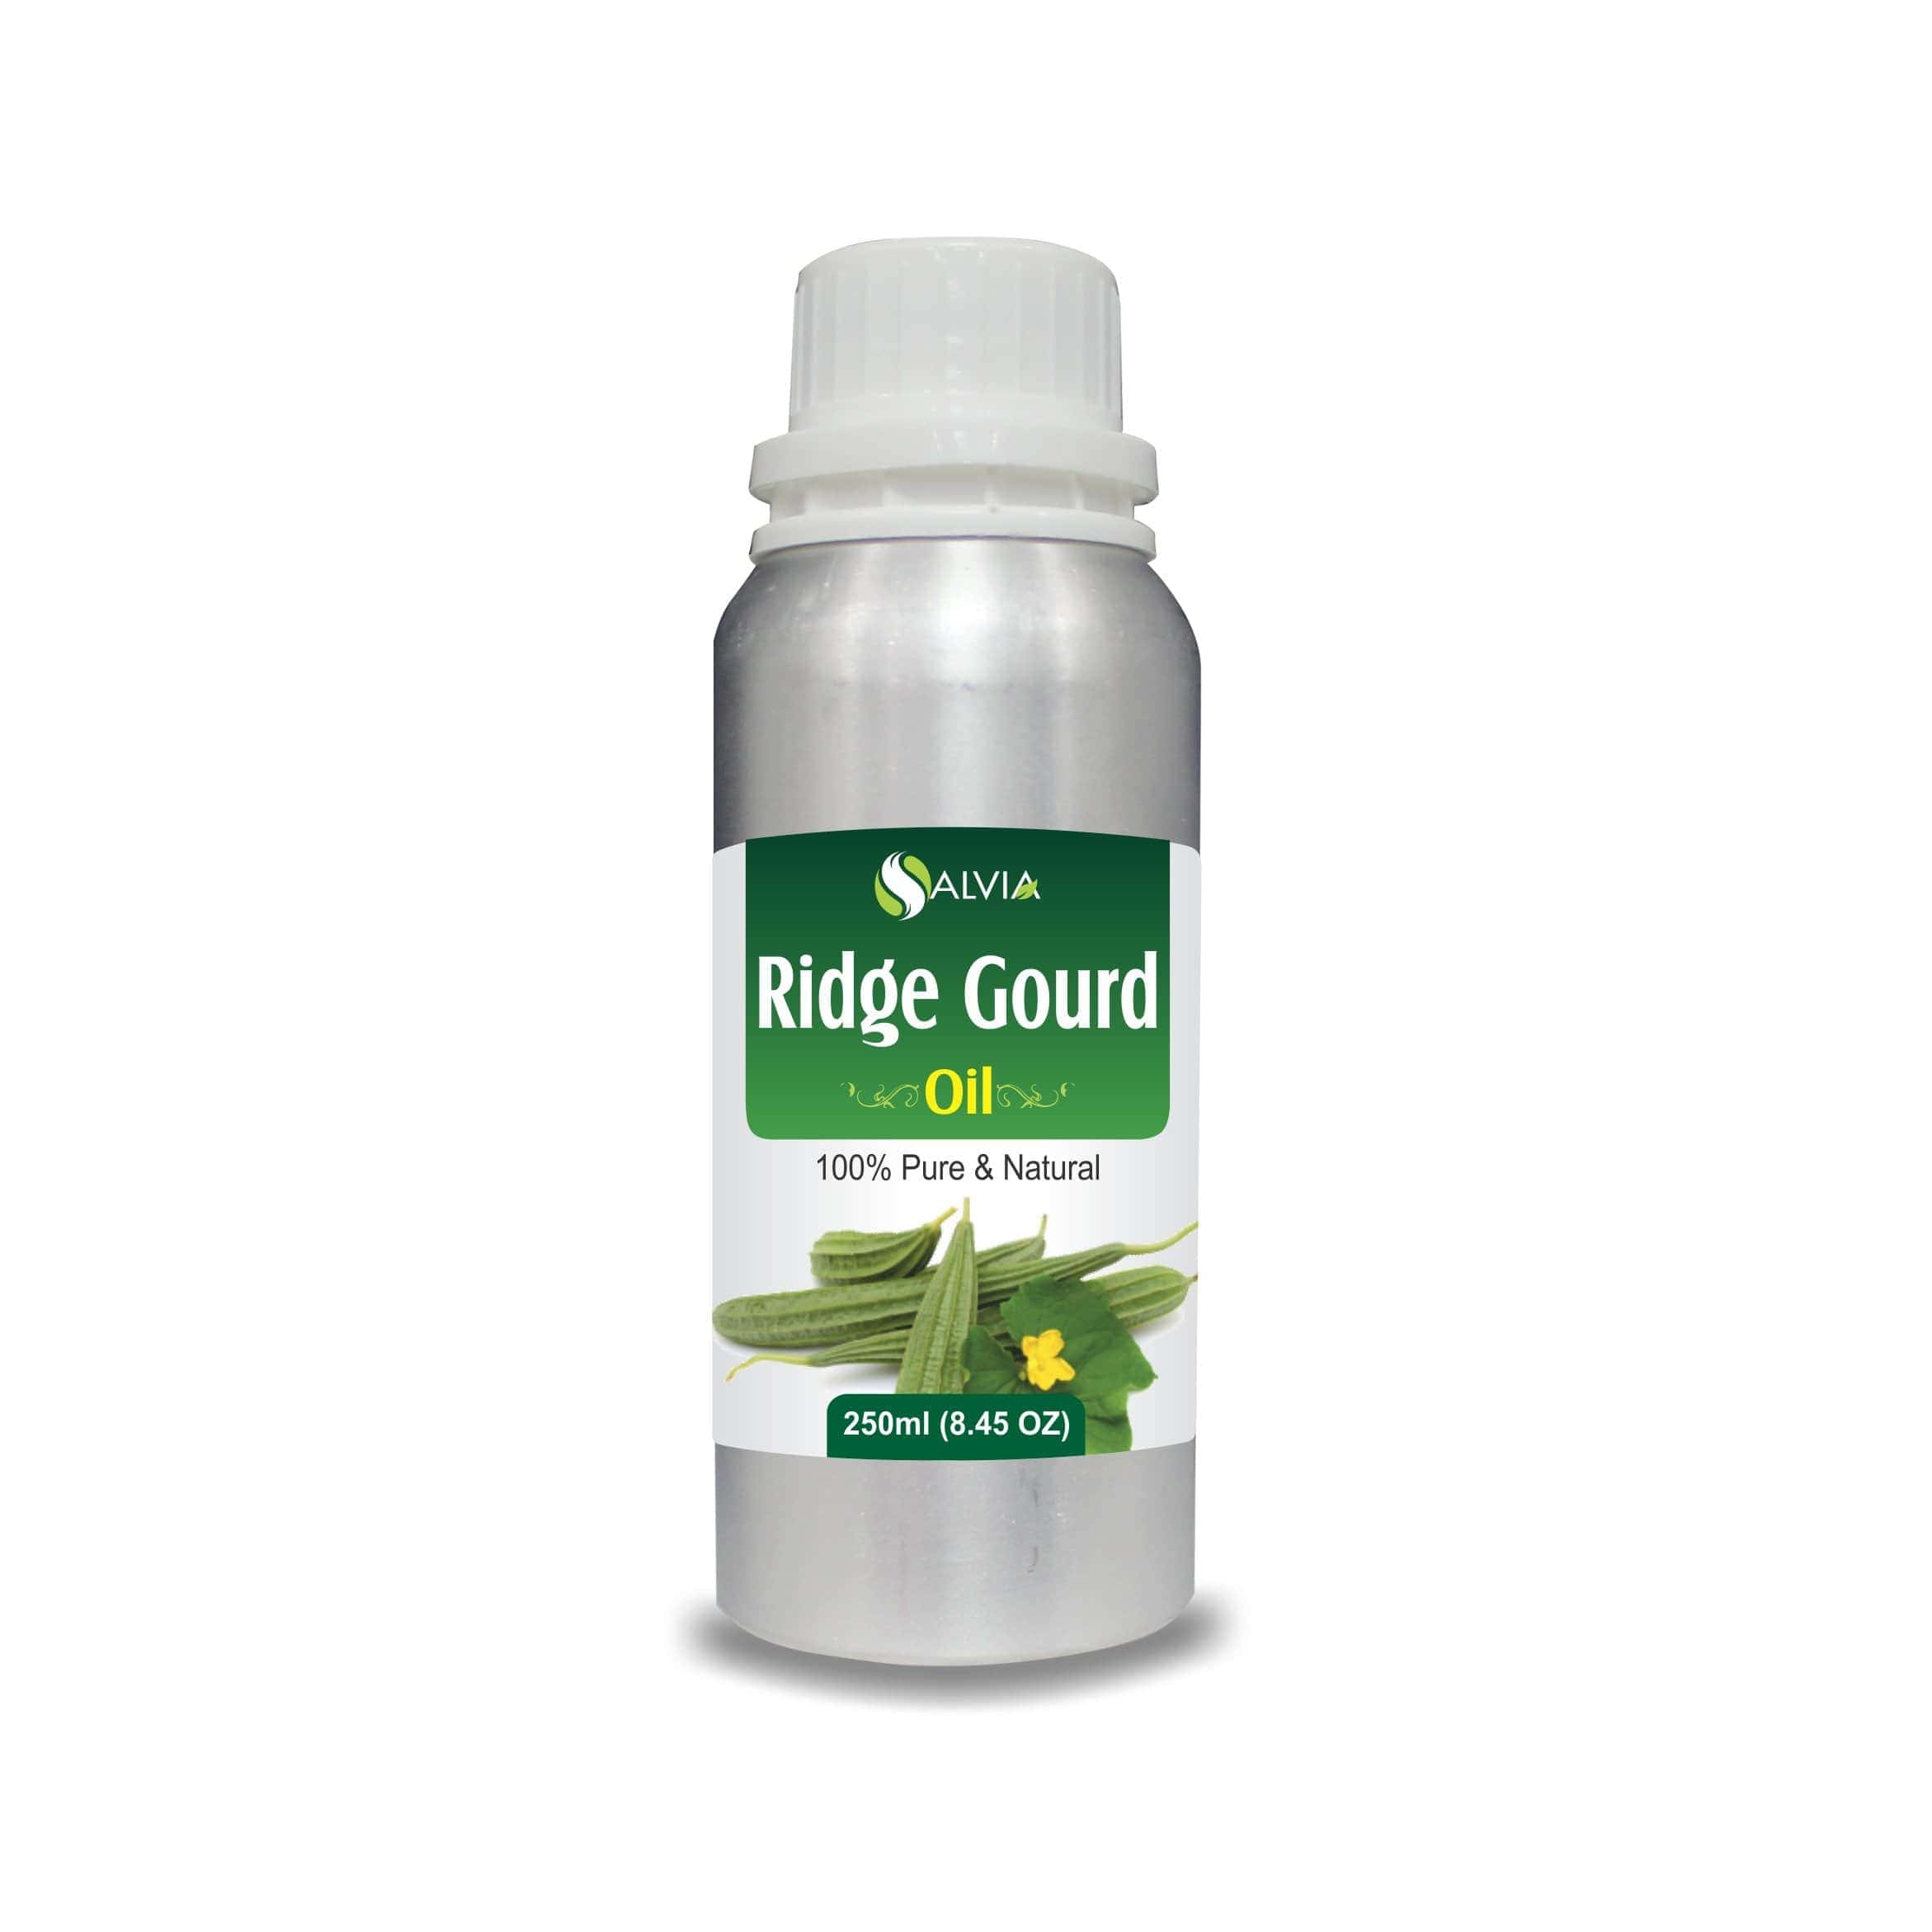 ridge gourd oil side effects